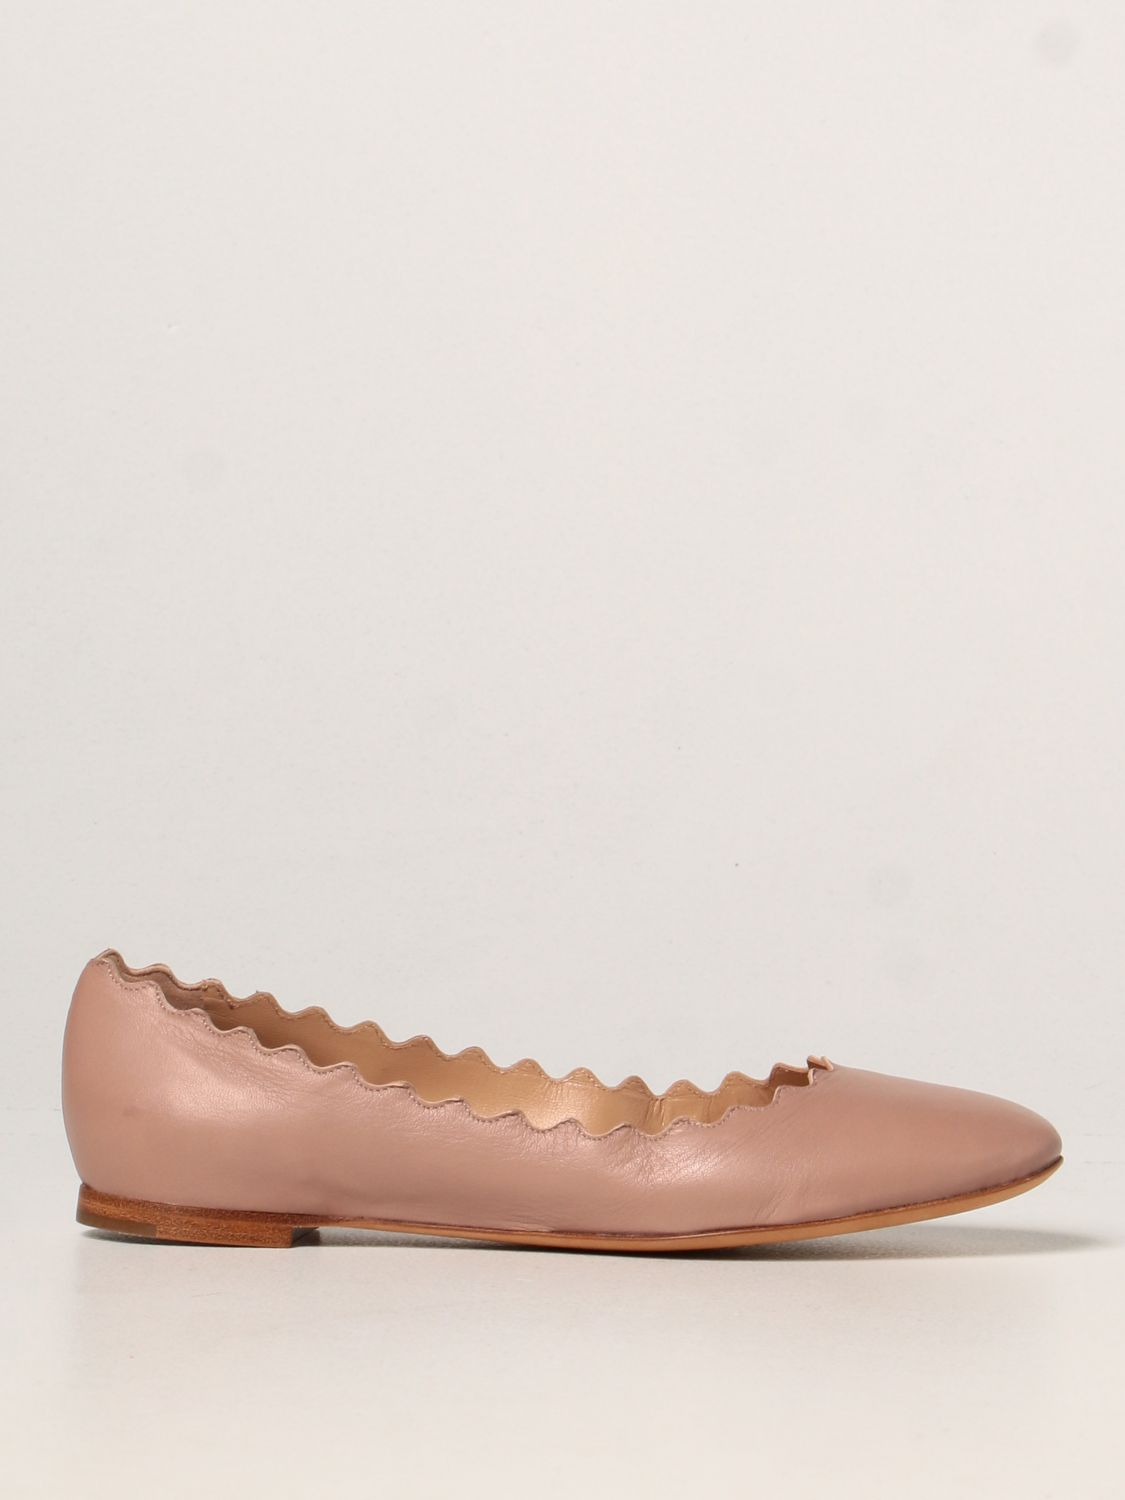 Ballet pumps Chloé: Lauren Chloé ballerina in leather pink 1